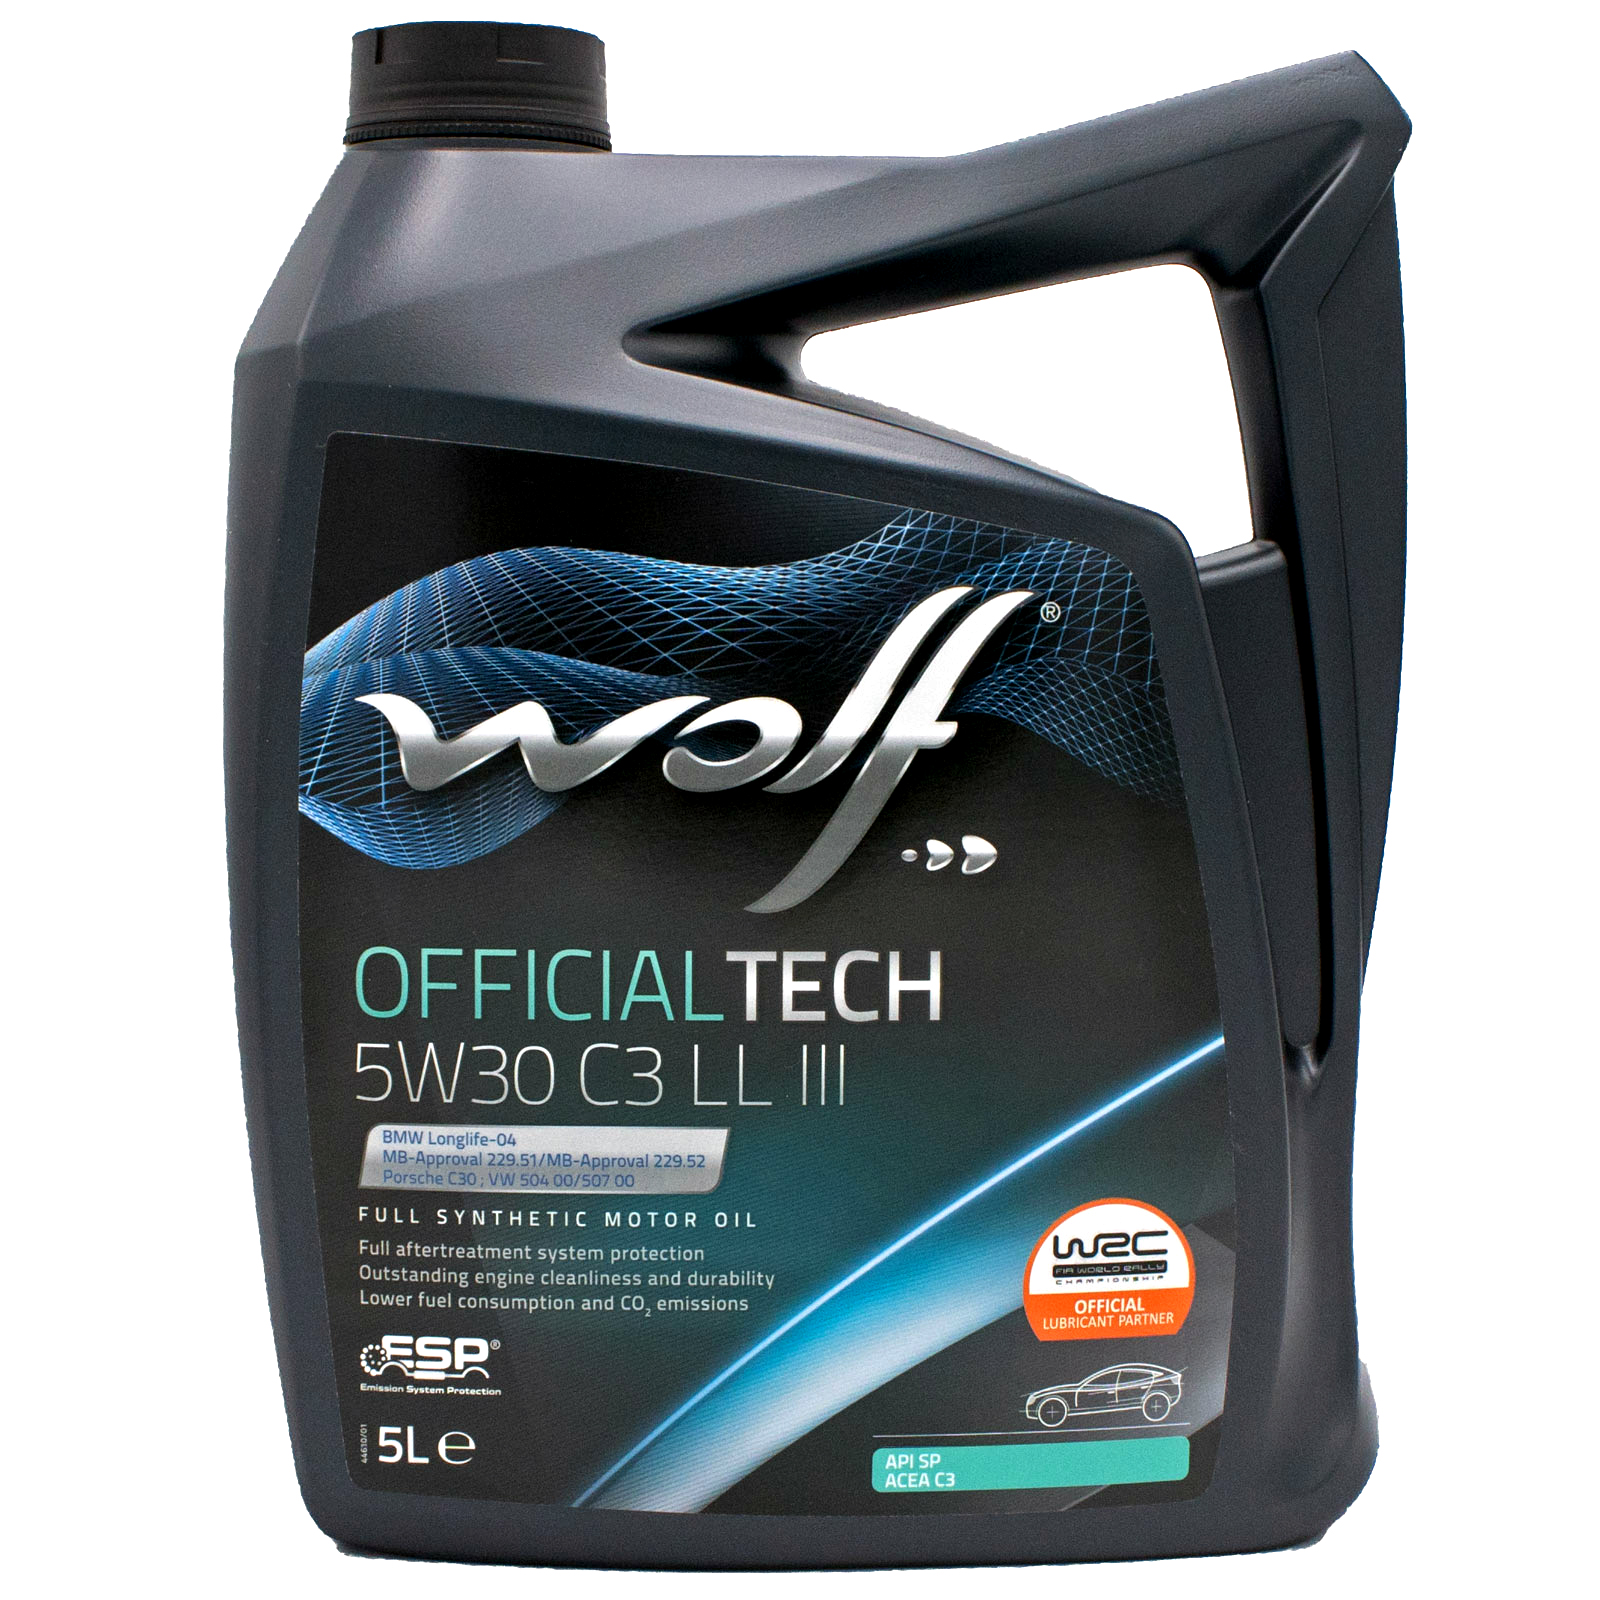 Oven ik zal sterk zijn voorjaar 5W30 LL Motorolie Kopen? | Wolf Officialtech 5W30 C3 LL III 5 Liter |  Vehicle Equipment Online Store